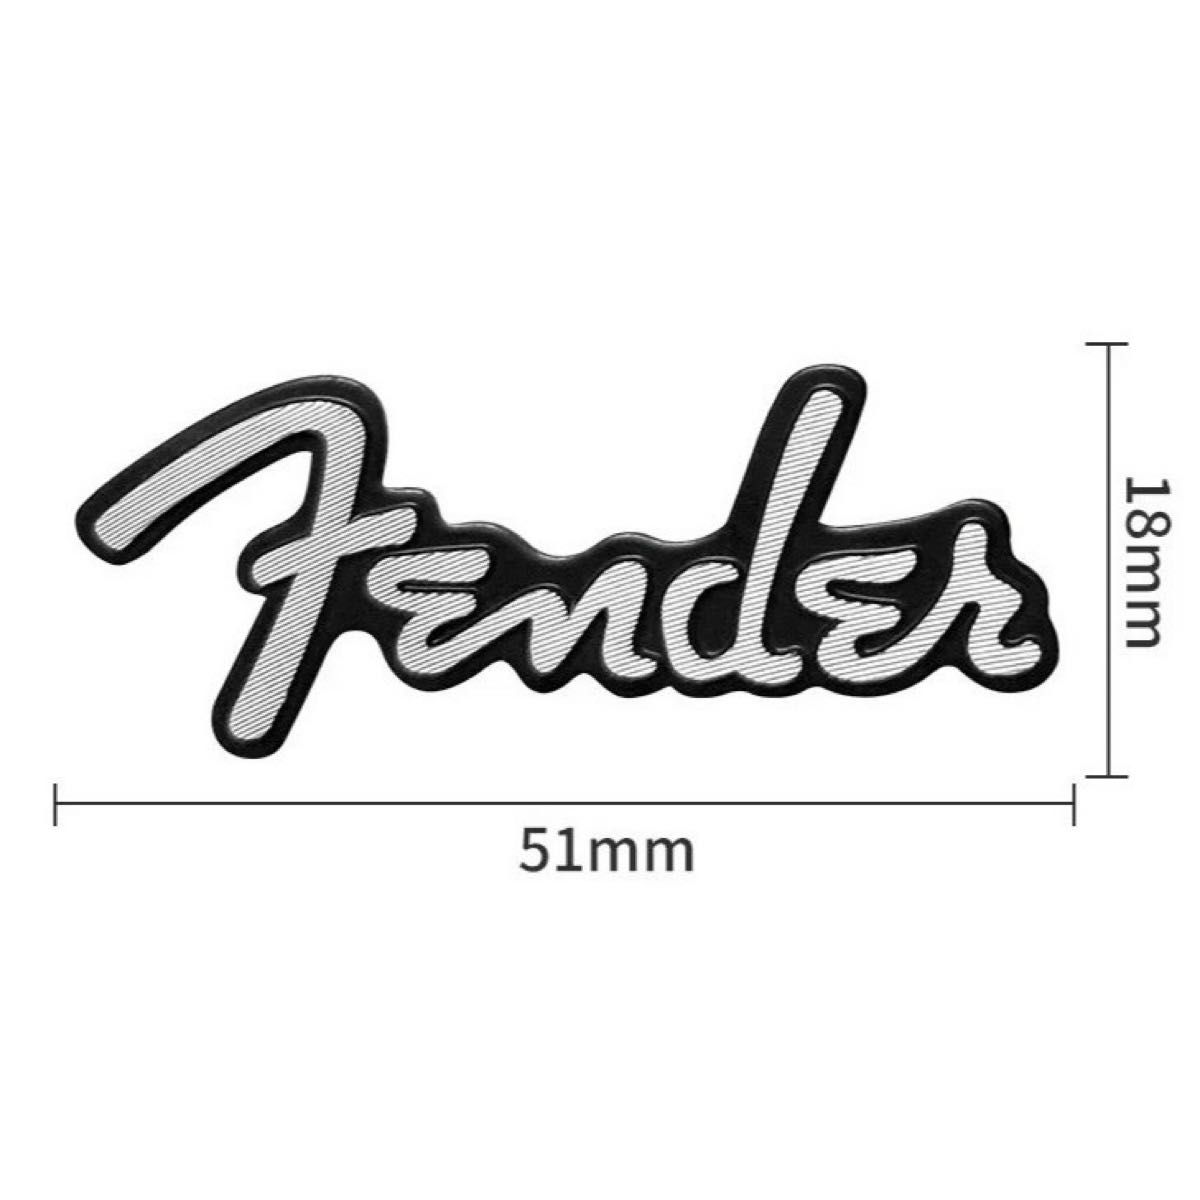 Fender フェンダー アルミ エンブレム プレート シルバー/ブラック b